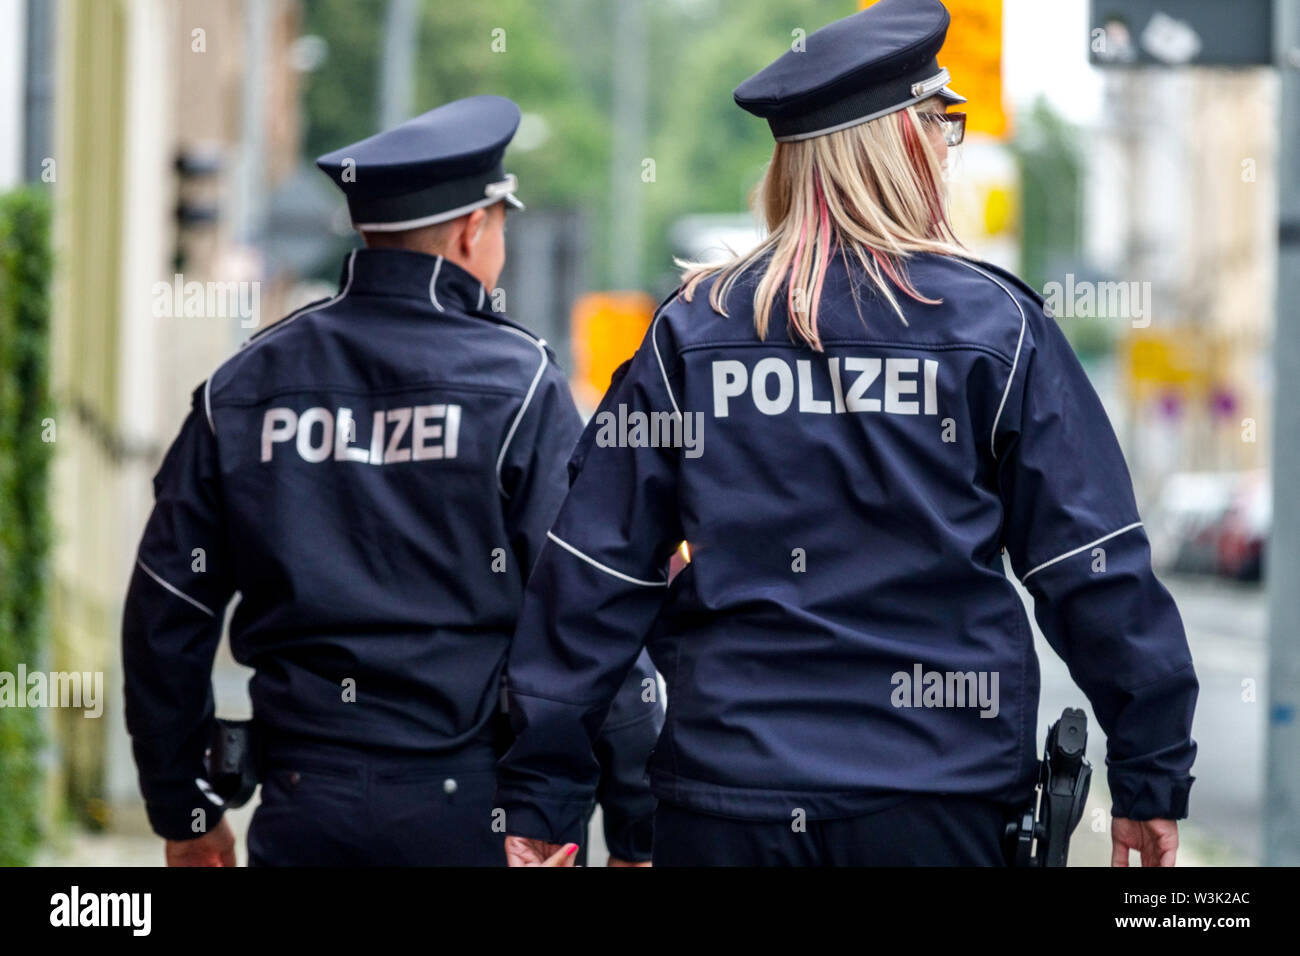 Allemagne policier femme deux patrouille de police Allemagne policier policier arrière vue de police allemande Banque D'Images